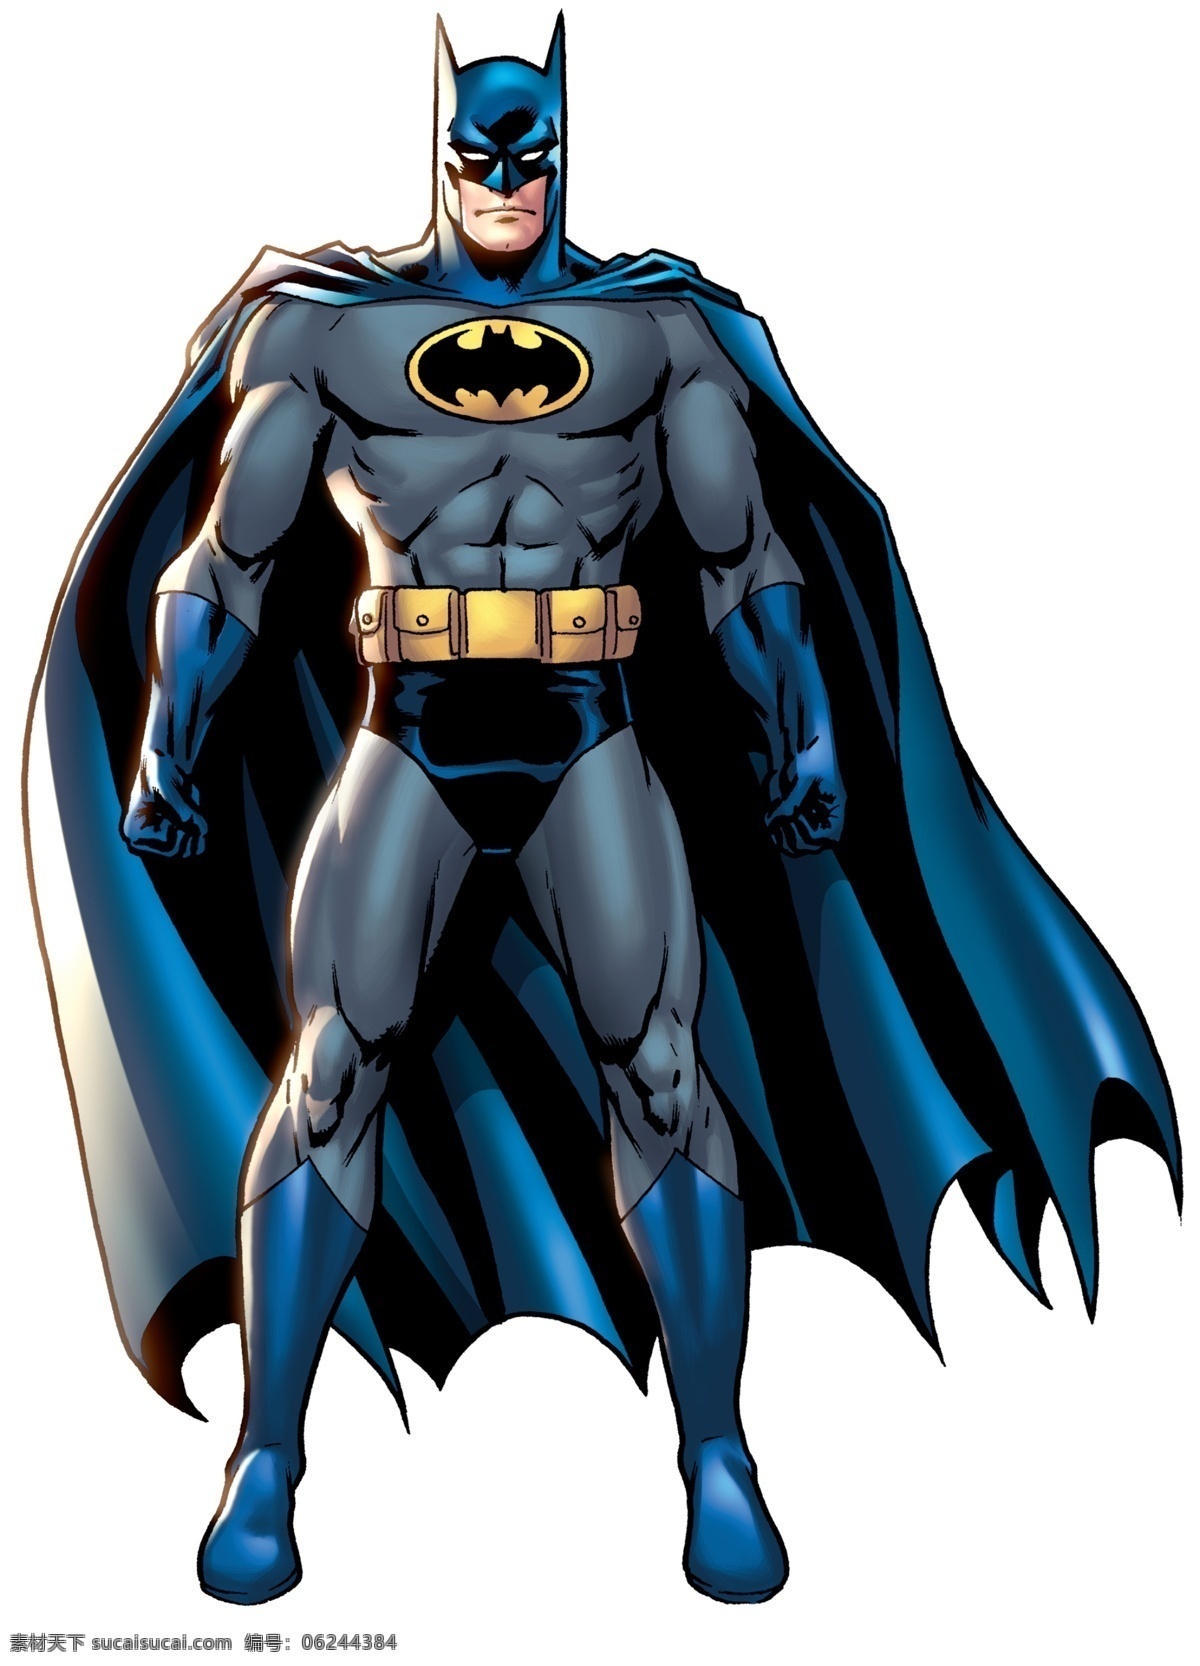 蝙蝠侠 大图 底图 动漫 高清 人物 英雄